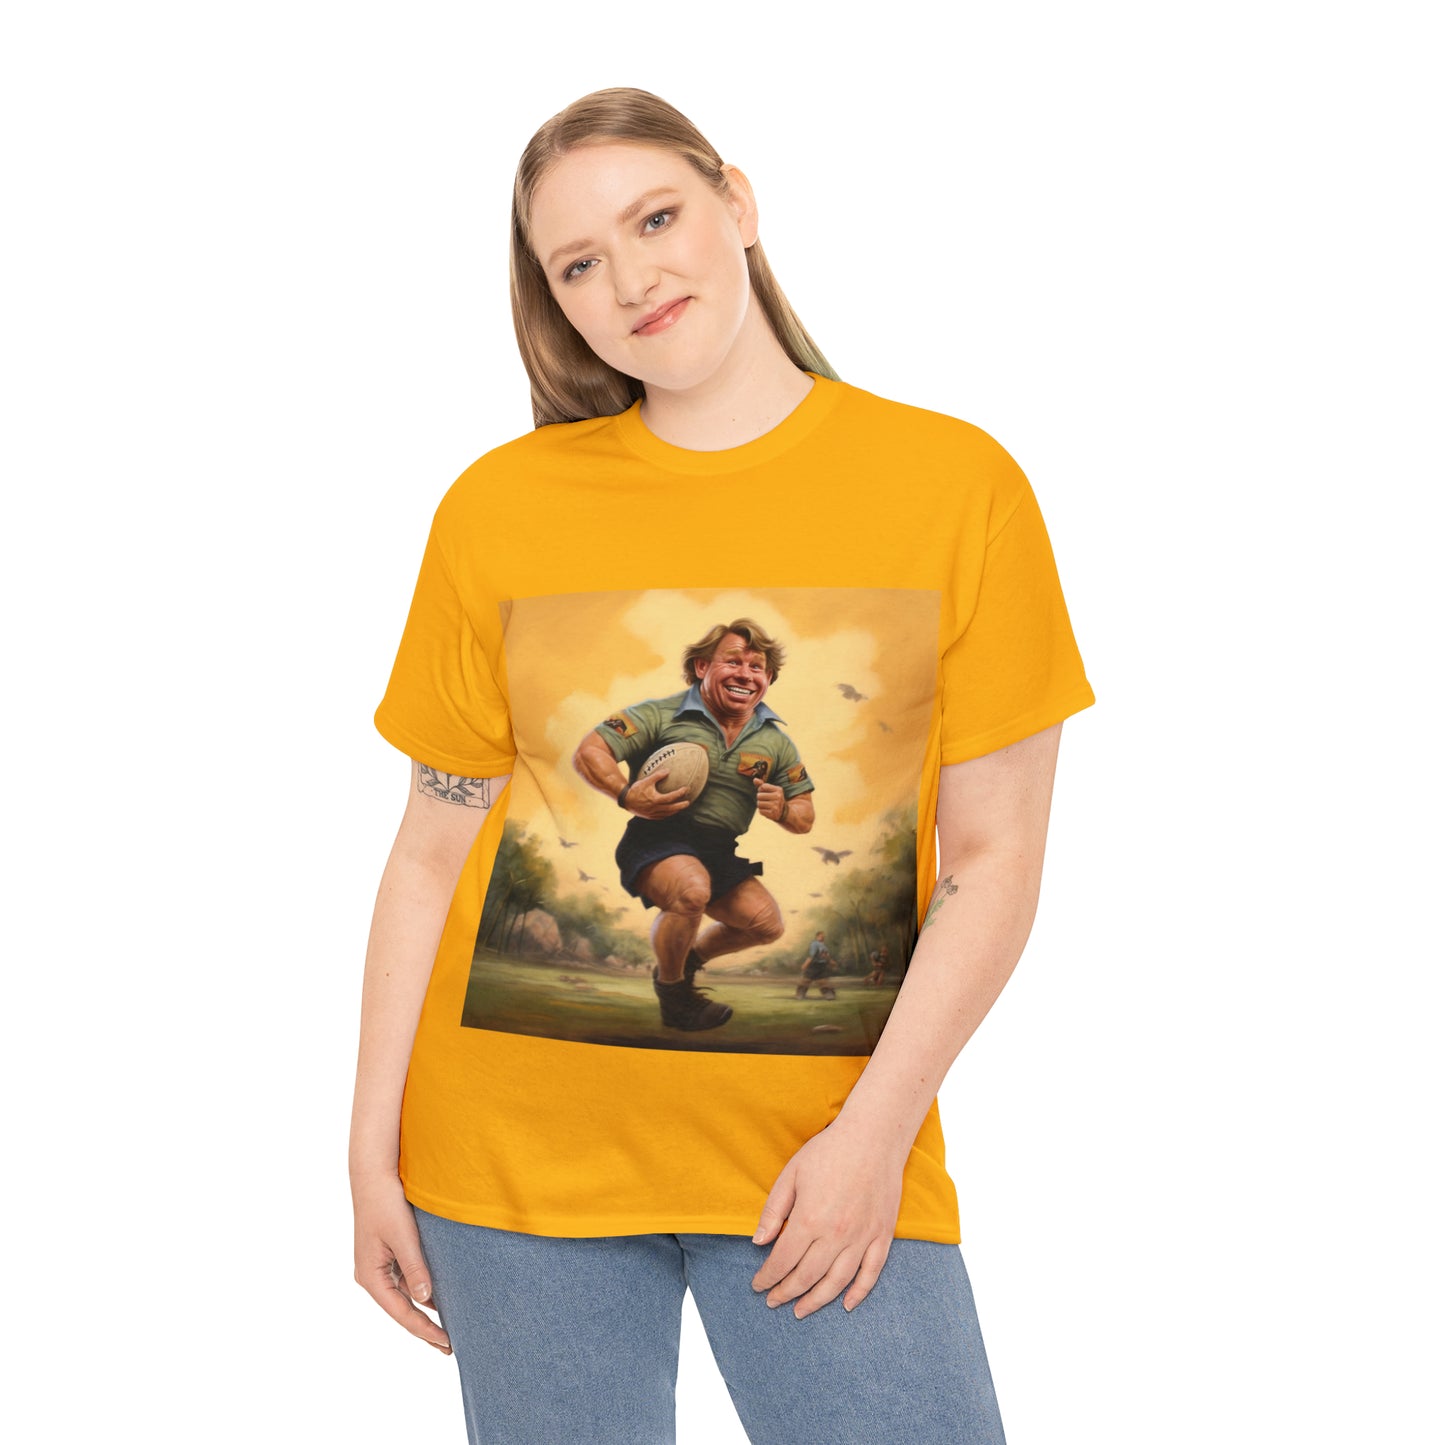 Steve Irwin - light shirt